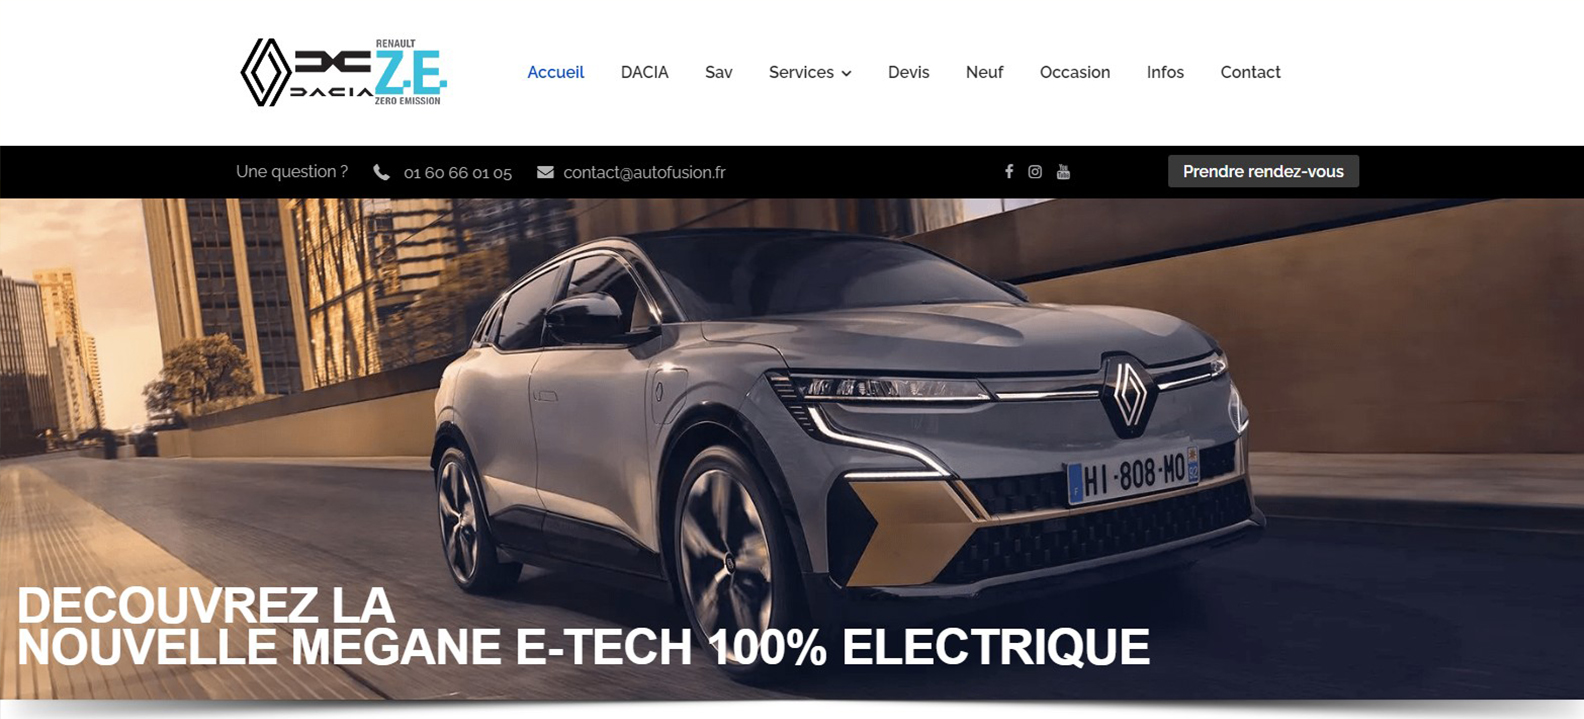 Site internet de Renault Autofusion